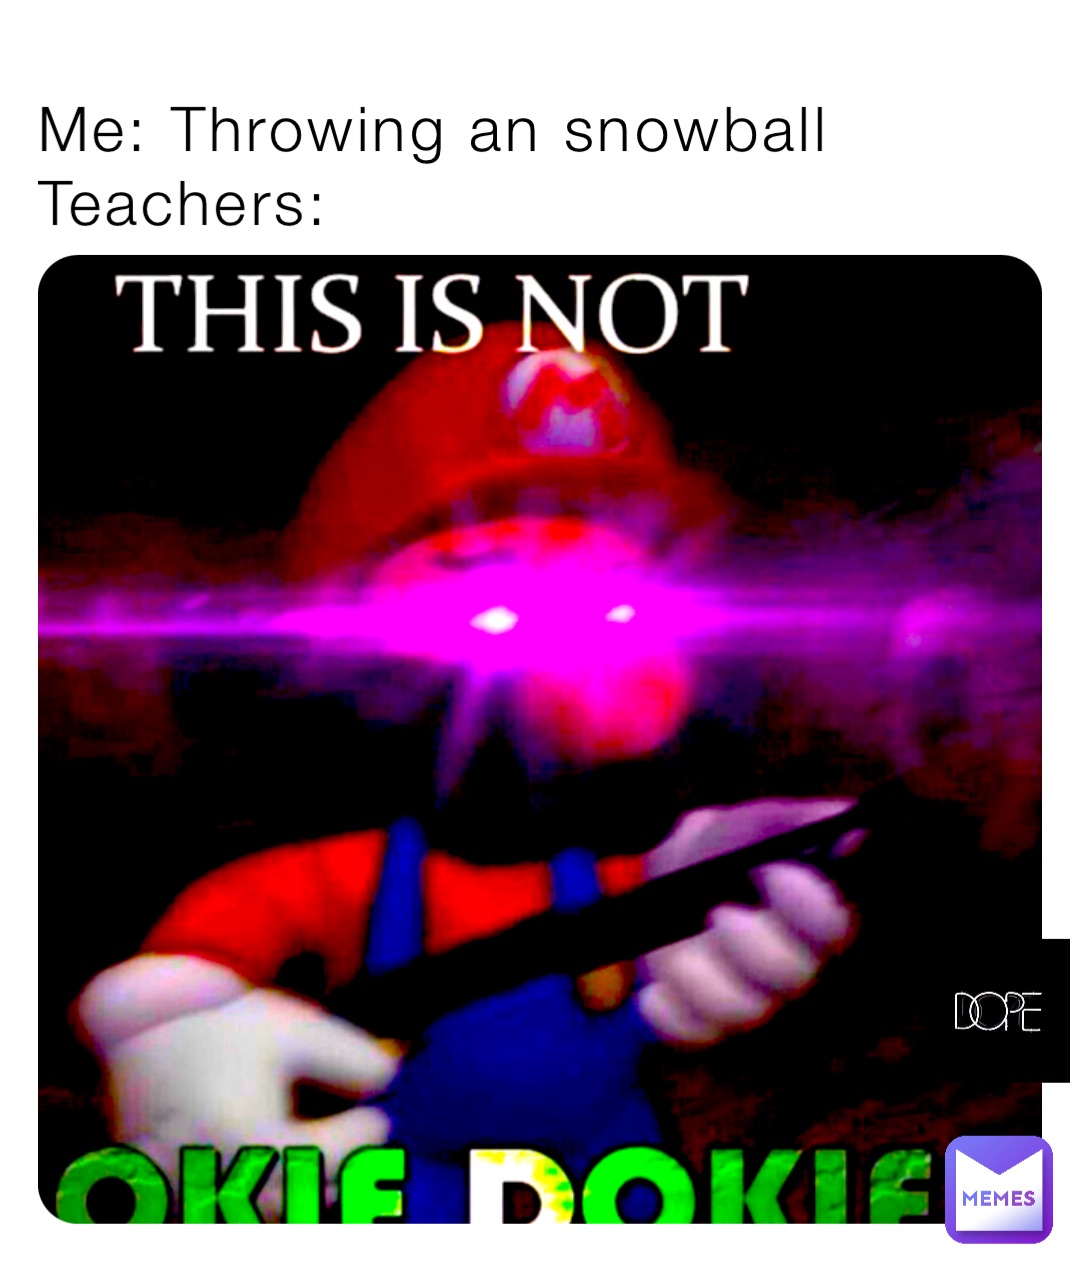 Me: Throwing an snowball
Teachers: